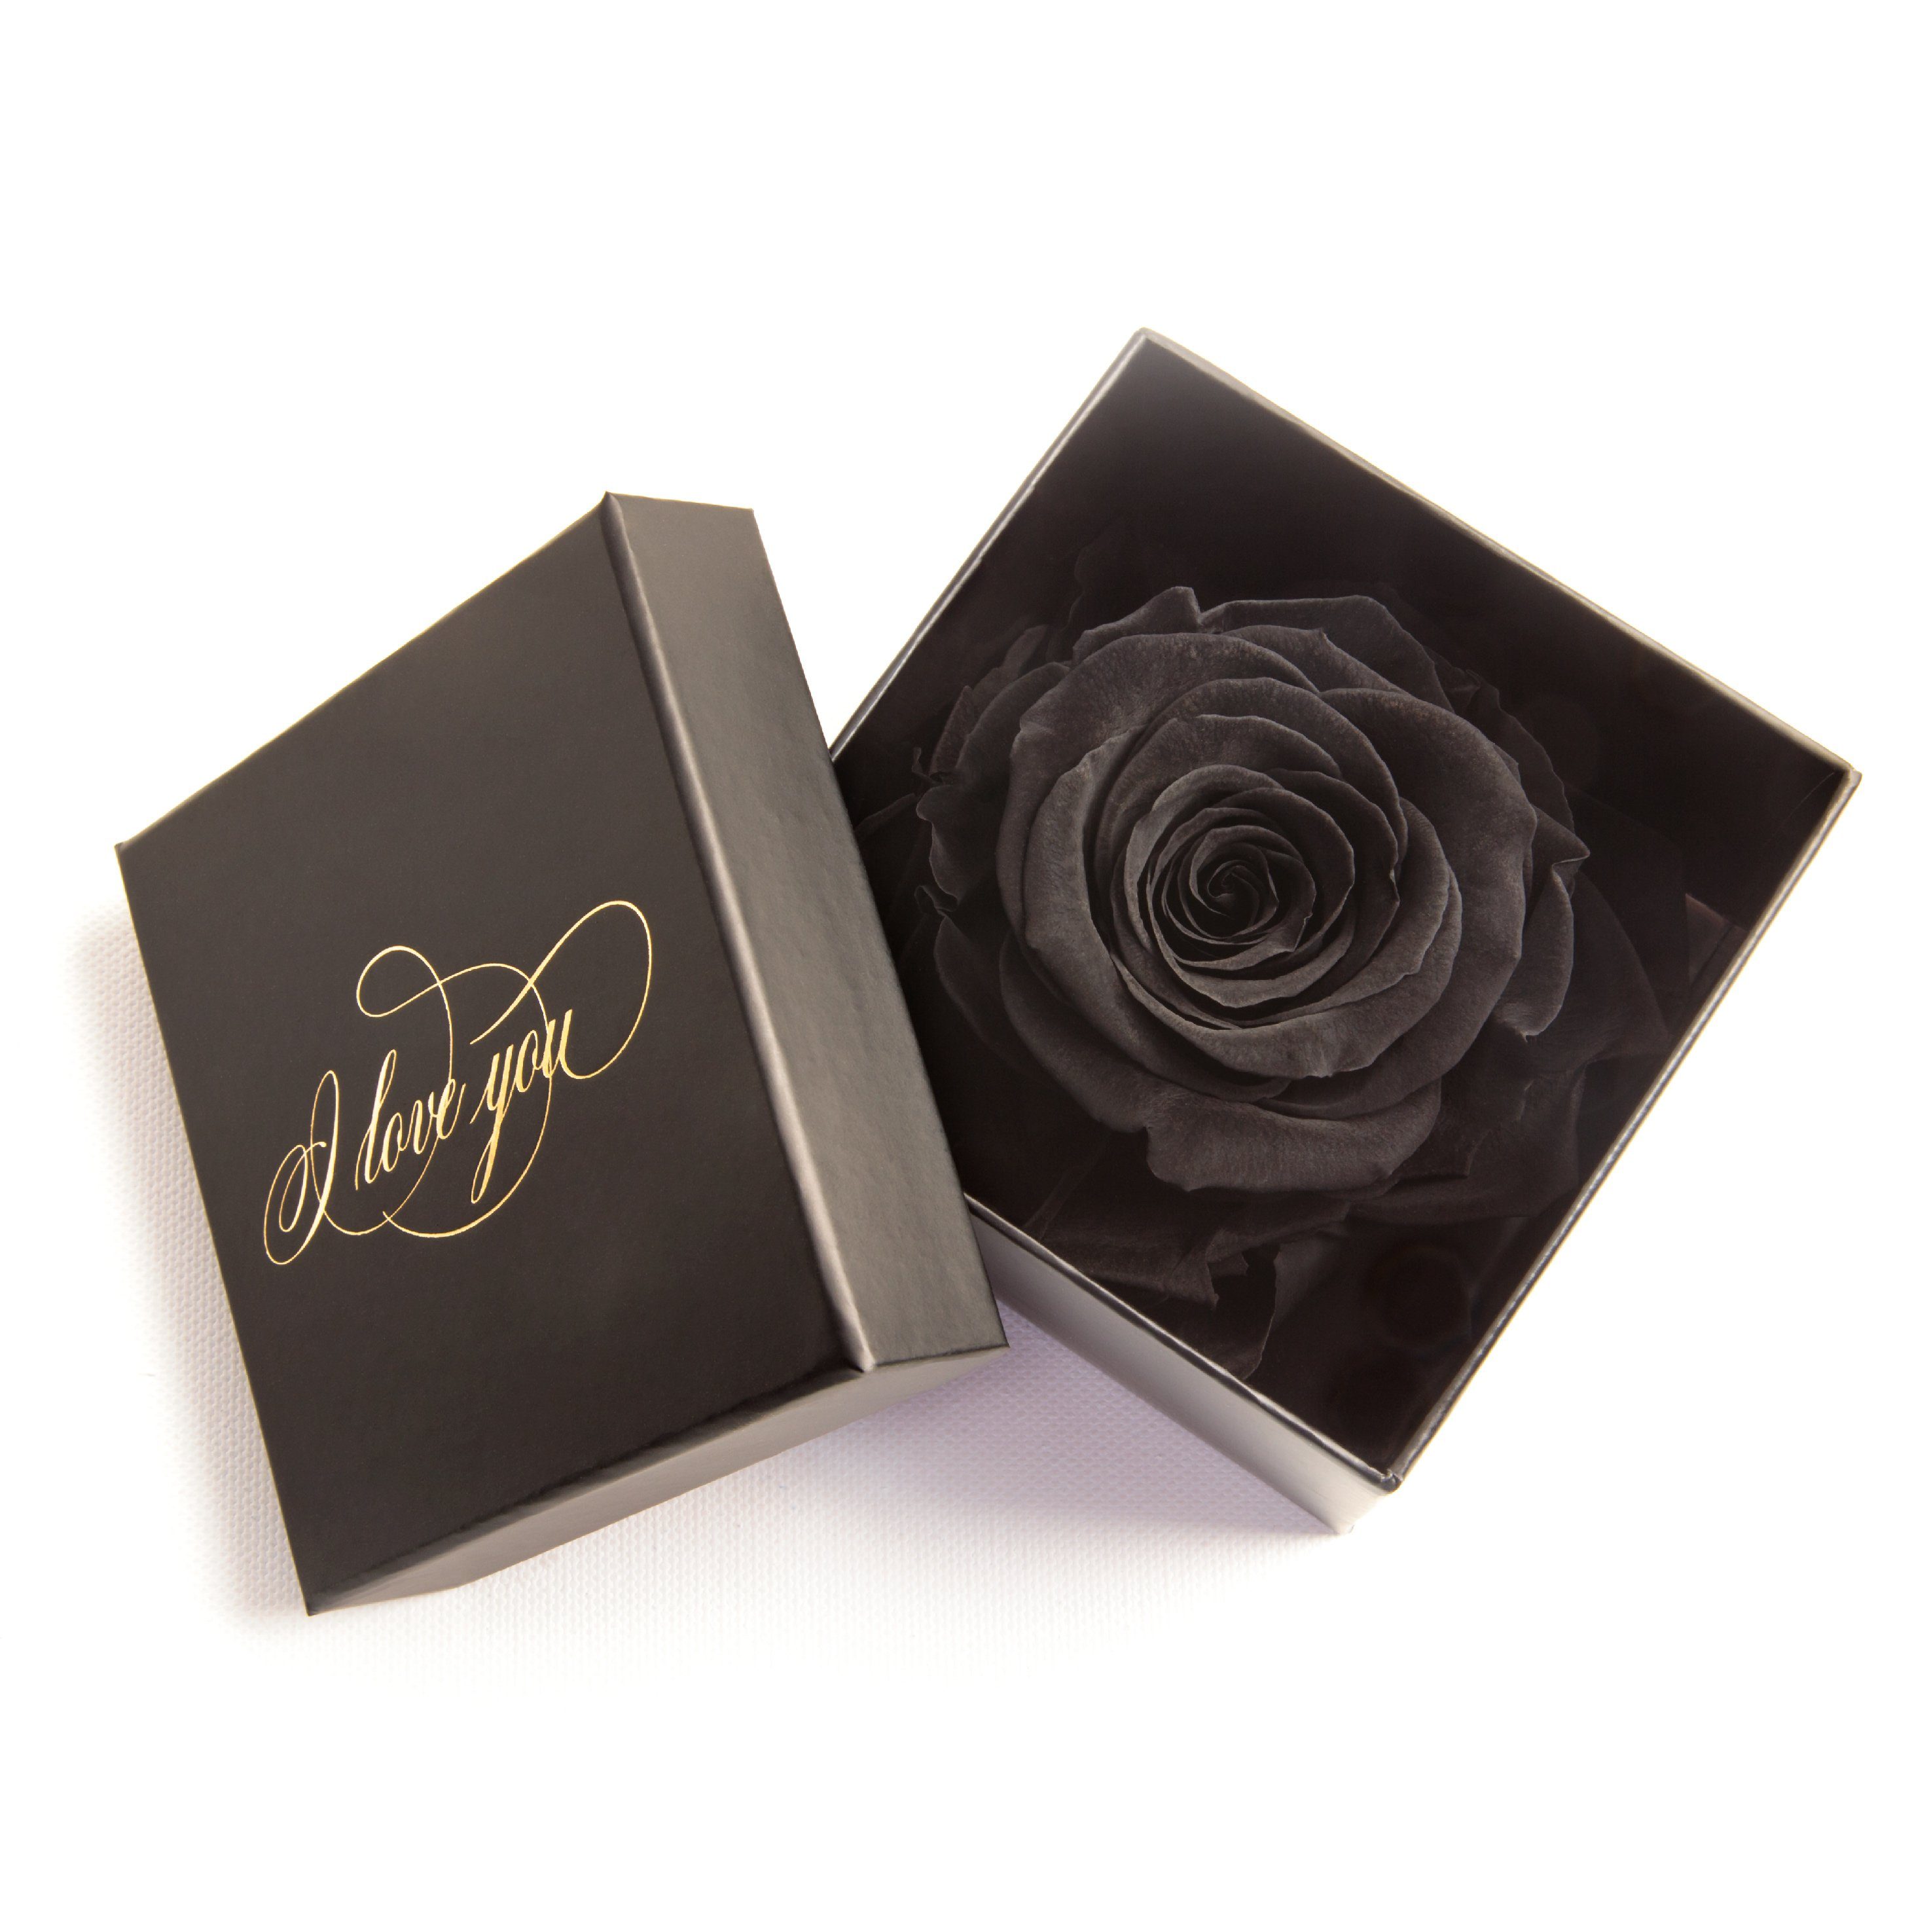 Rote ROSE@Floral Box Personalisierte Liebe Verse@Glass @Gold @Unique Valentinstag Geschenk